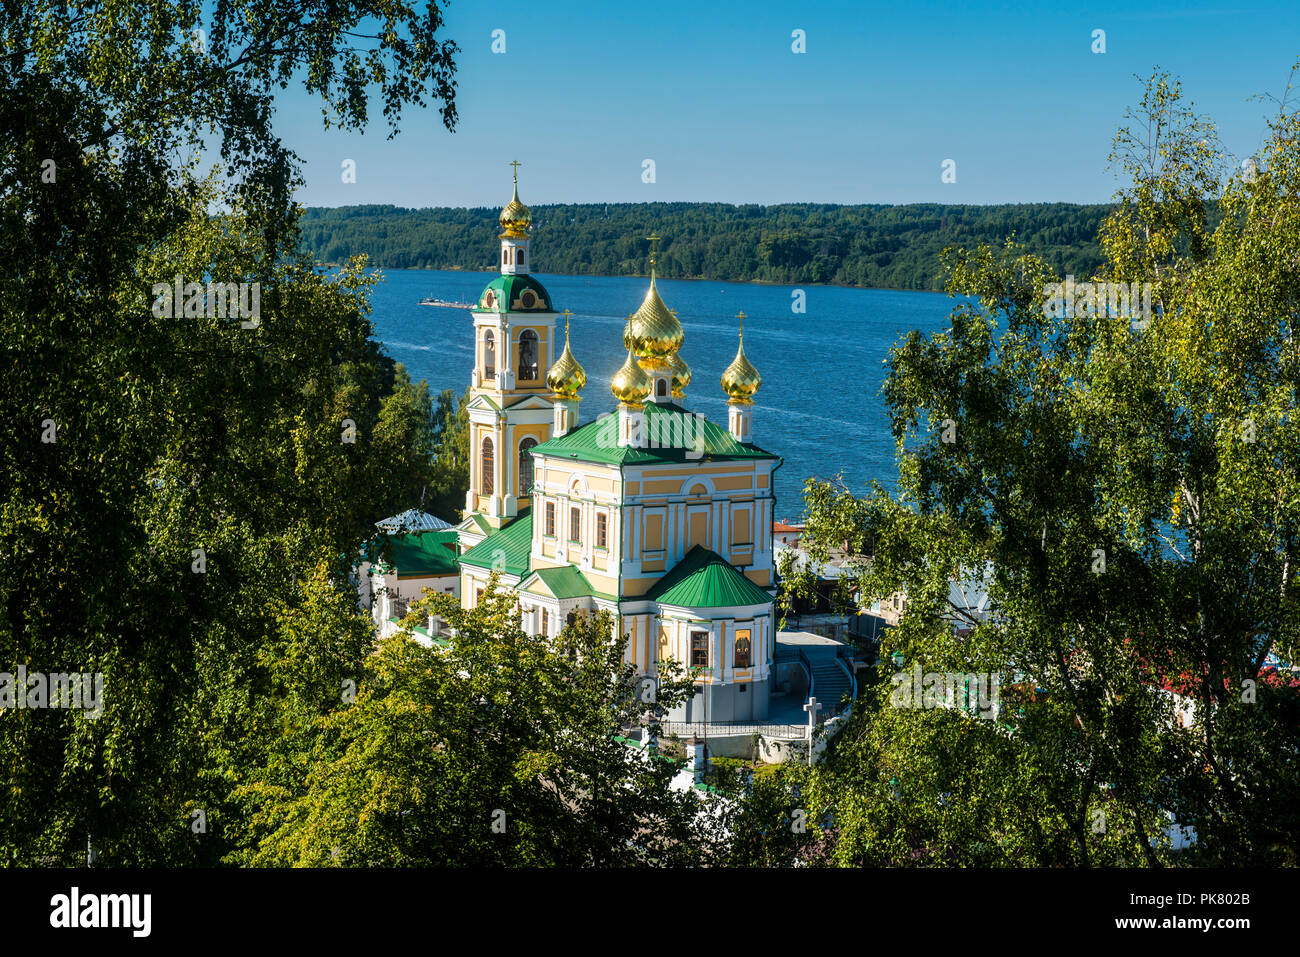 Donnent sur plus d'une église orthodoxe et la Volga, Plyos, anneau d'or, Russie Banque D'Images